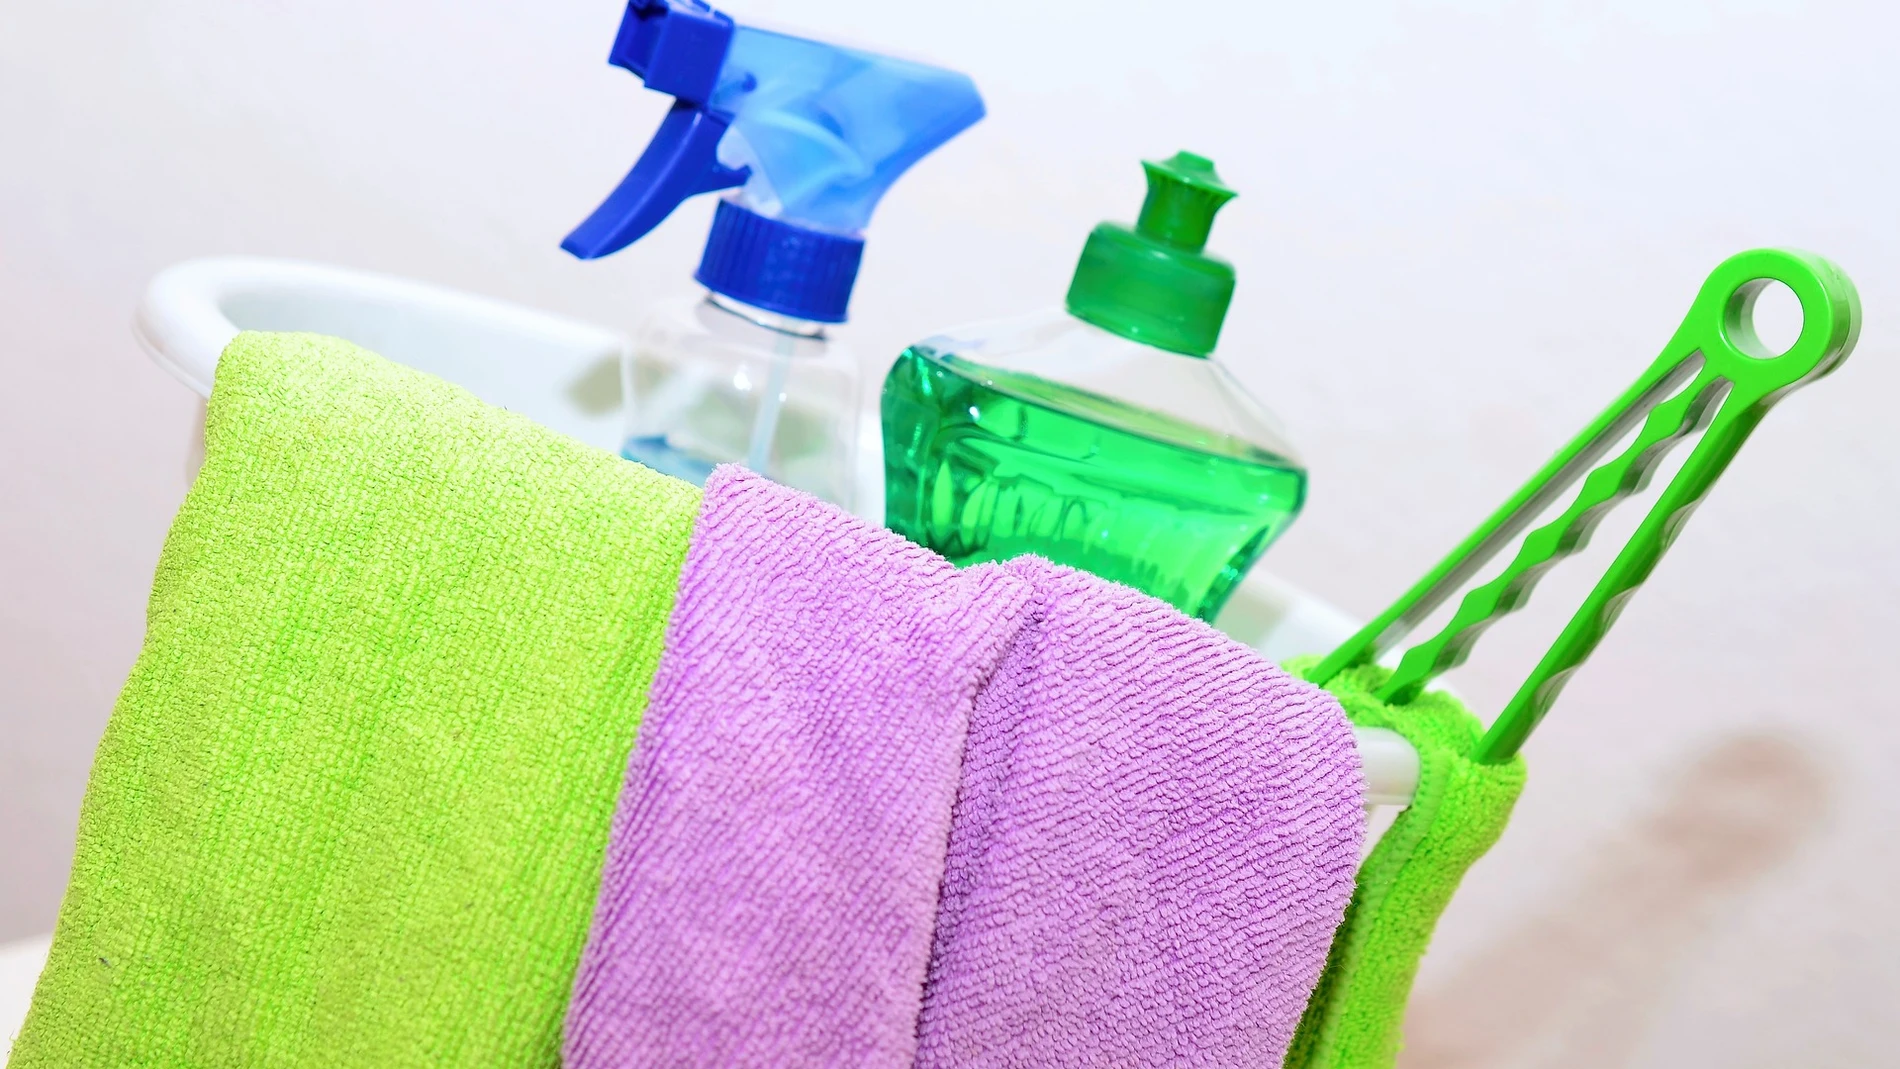 Esta es la forma correcta de desinfectar el estropajo y mantenerlo siempre  limpio